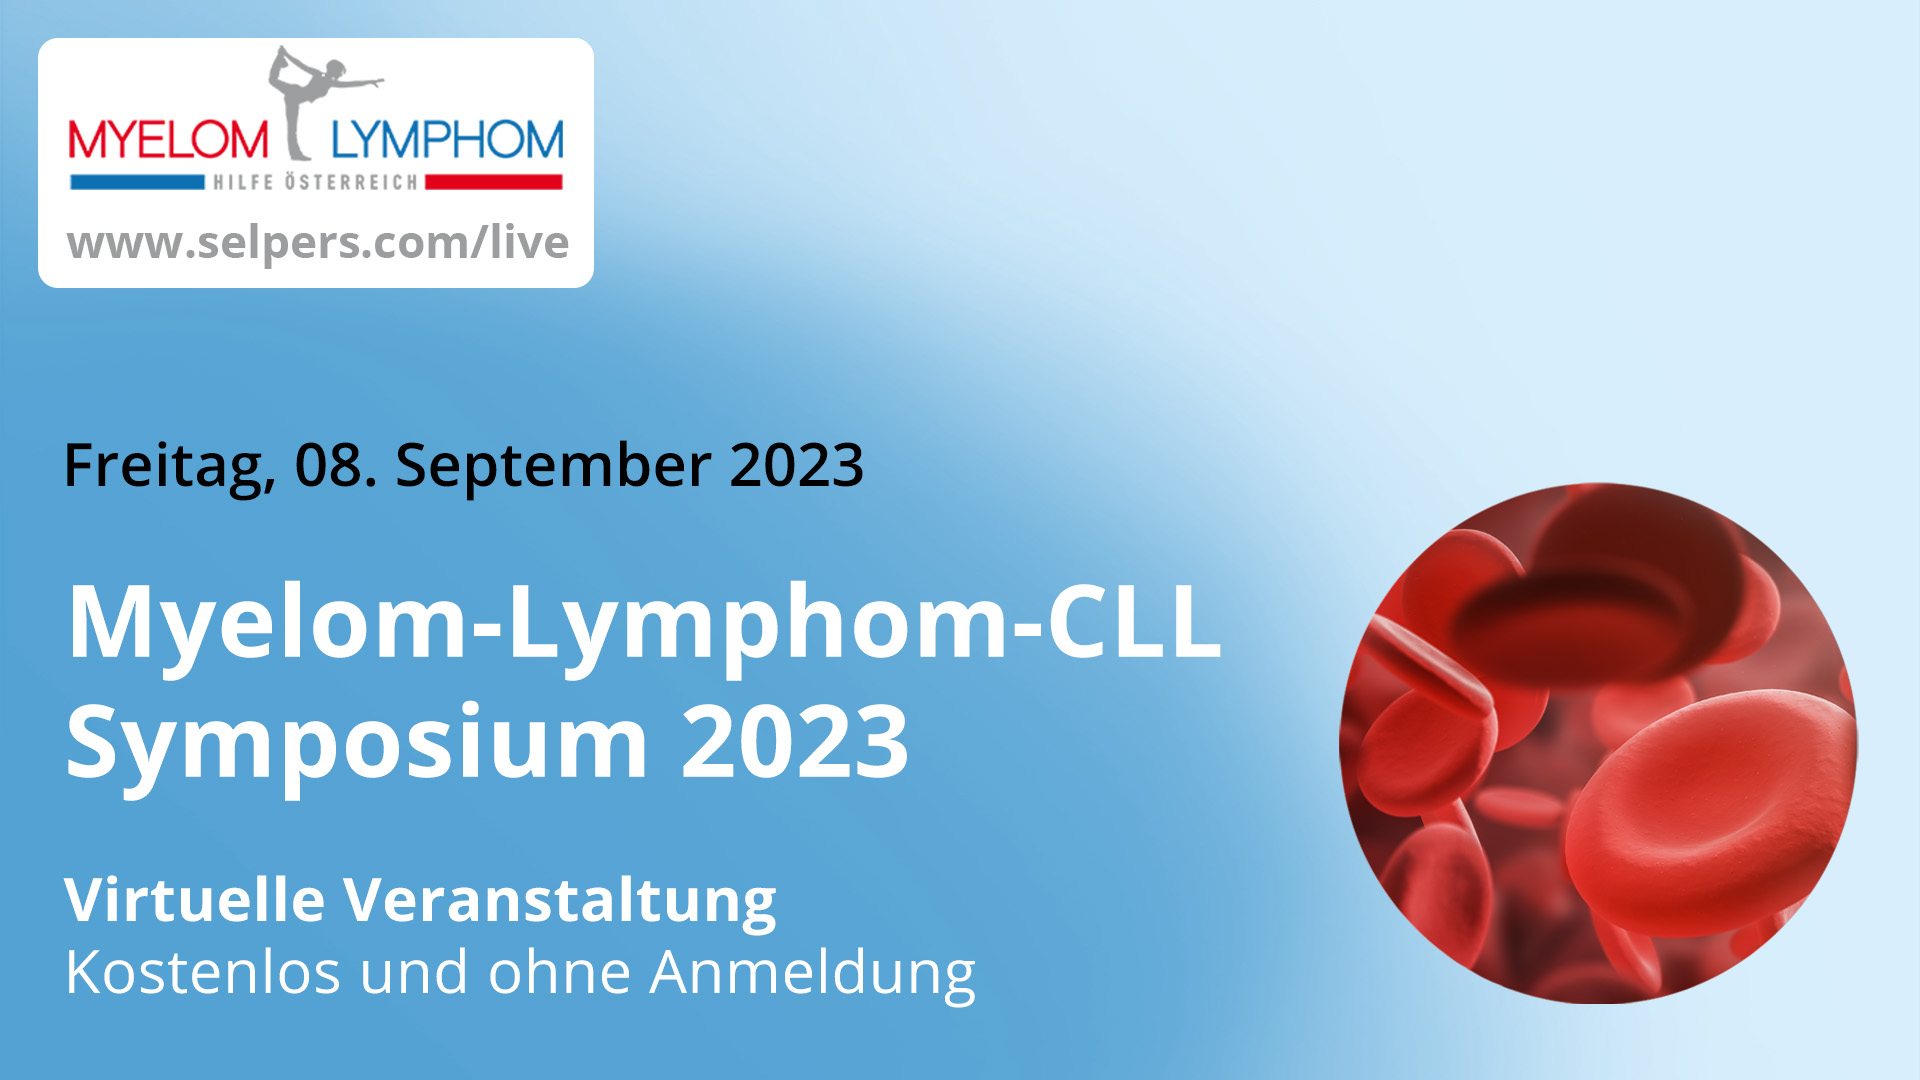 Myelom-Lymphom-CLL-Symposium 2023